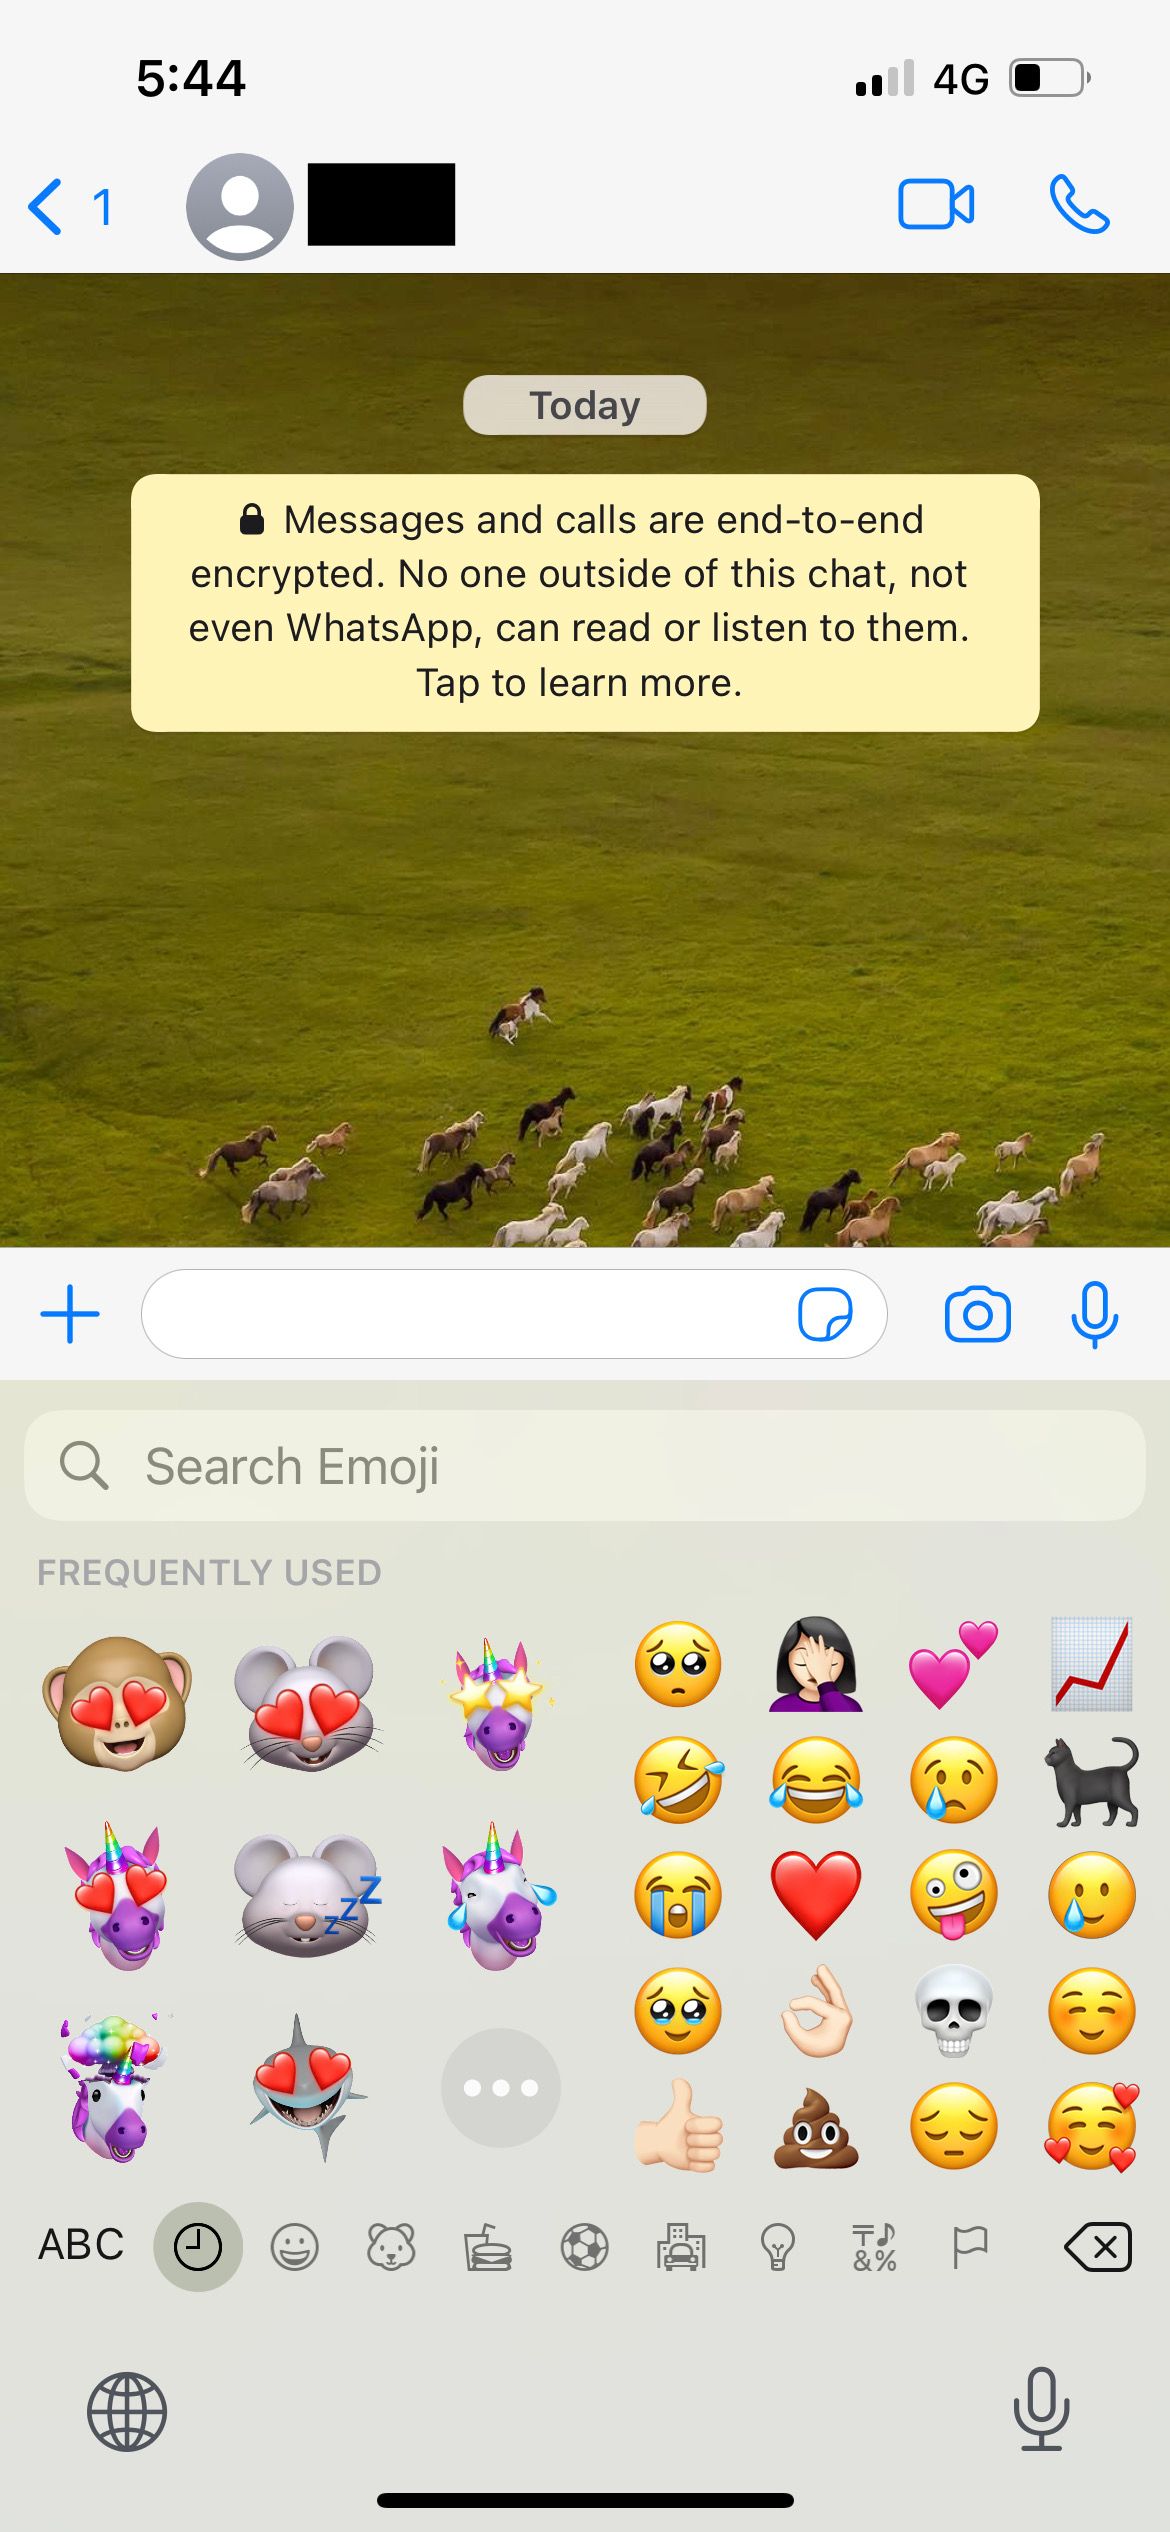 iphone emoji keyboard in whatsapp